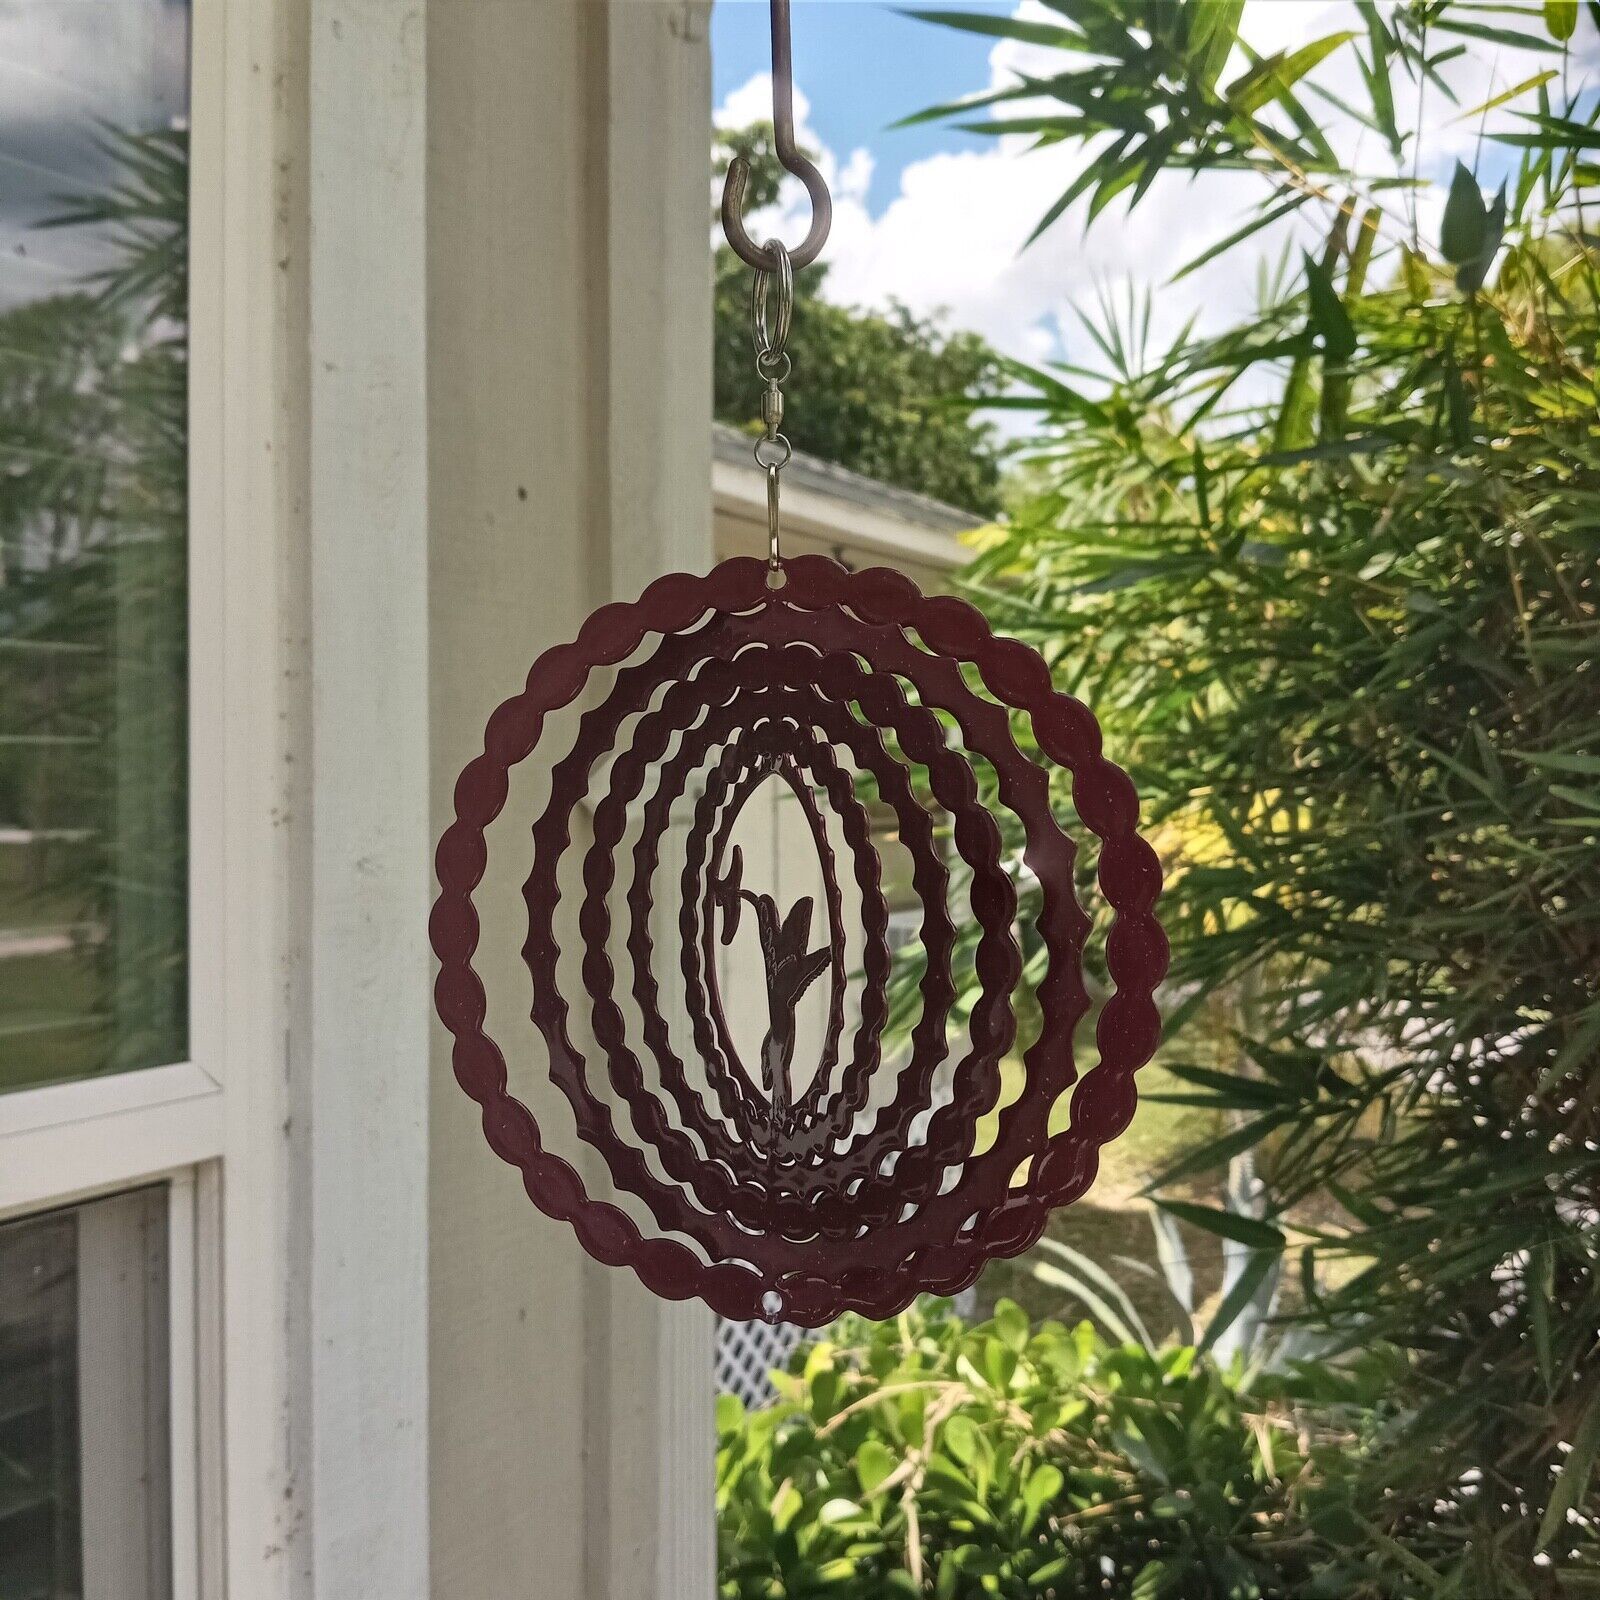 Hummingbird Metal Hanging Wind Spinner 6.5" Brown Enamel NEW 3D Kinetic Yard Art - $9.49